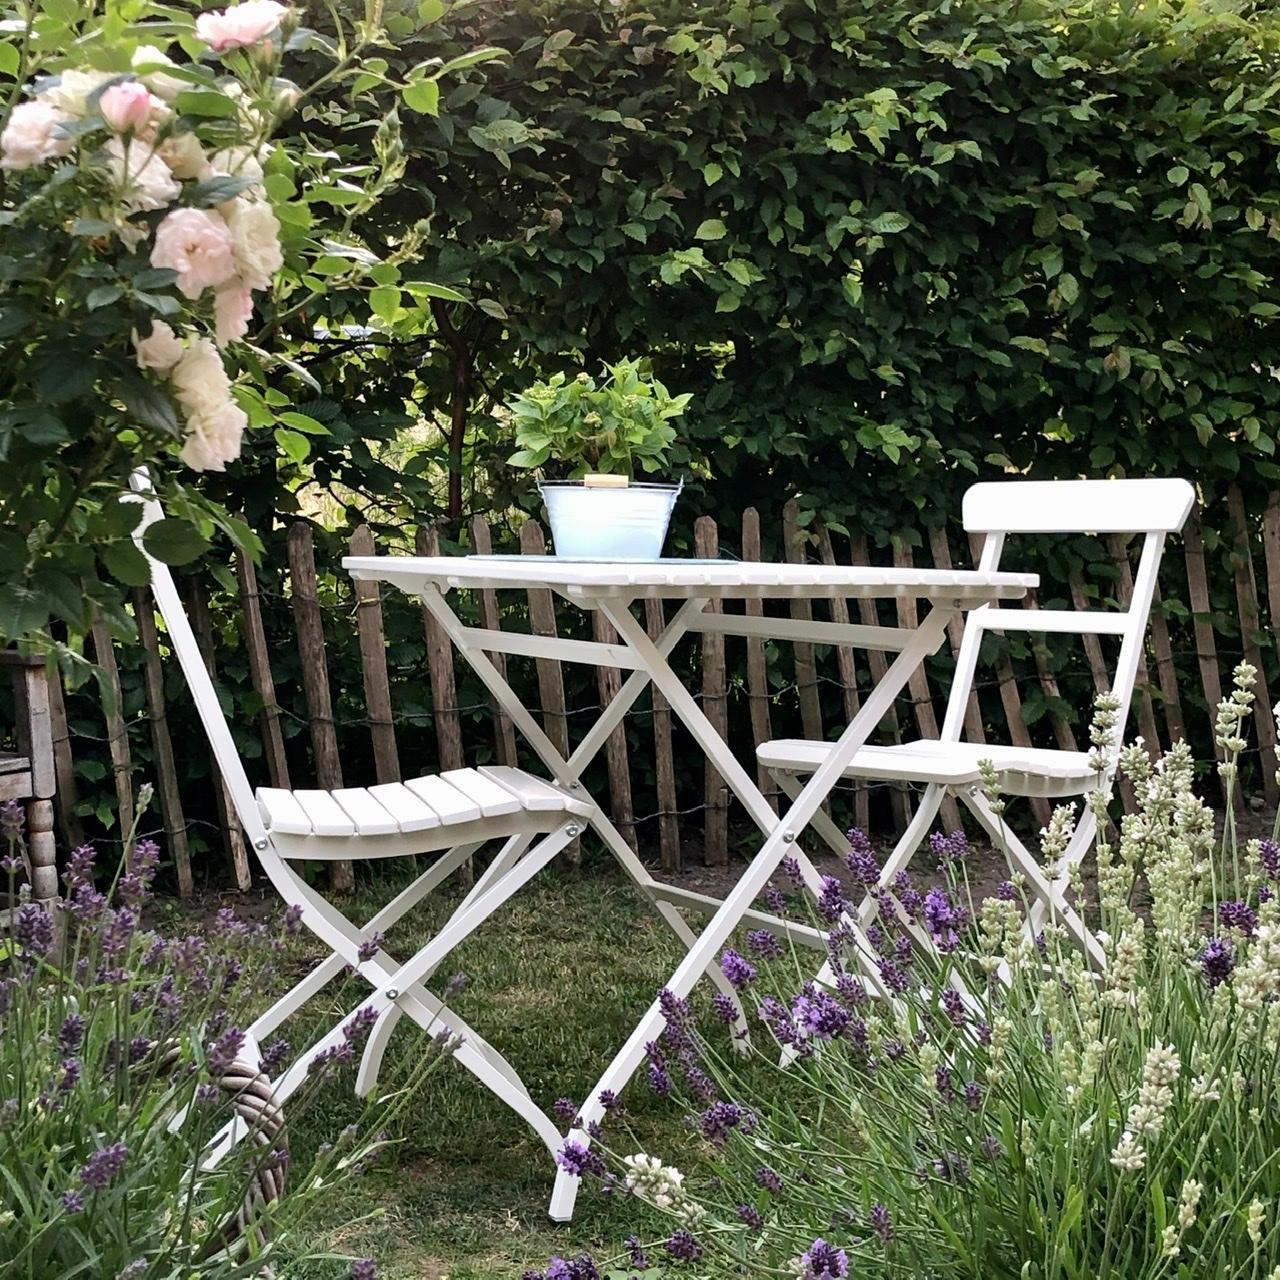 Neuzugang im Garten, schon jetzt geliebt und so schön variabel...
#gartenliebe #sitzgelegenheit #lavendel #gartenglück 